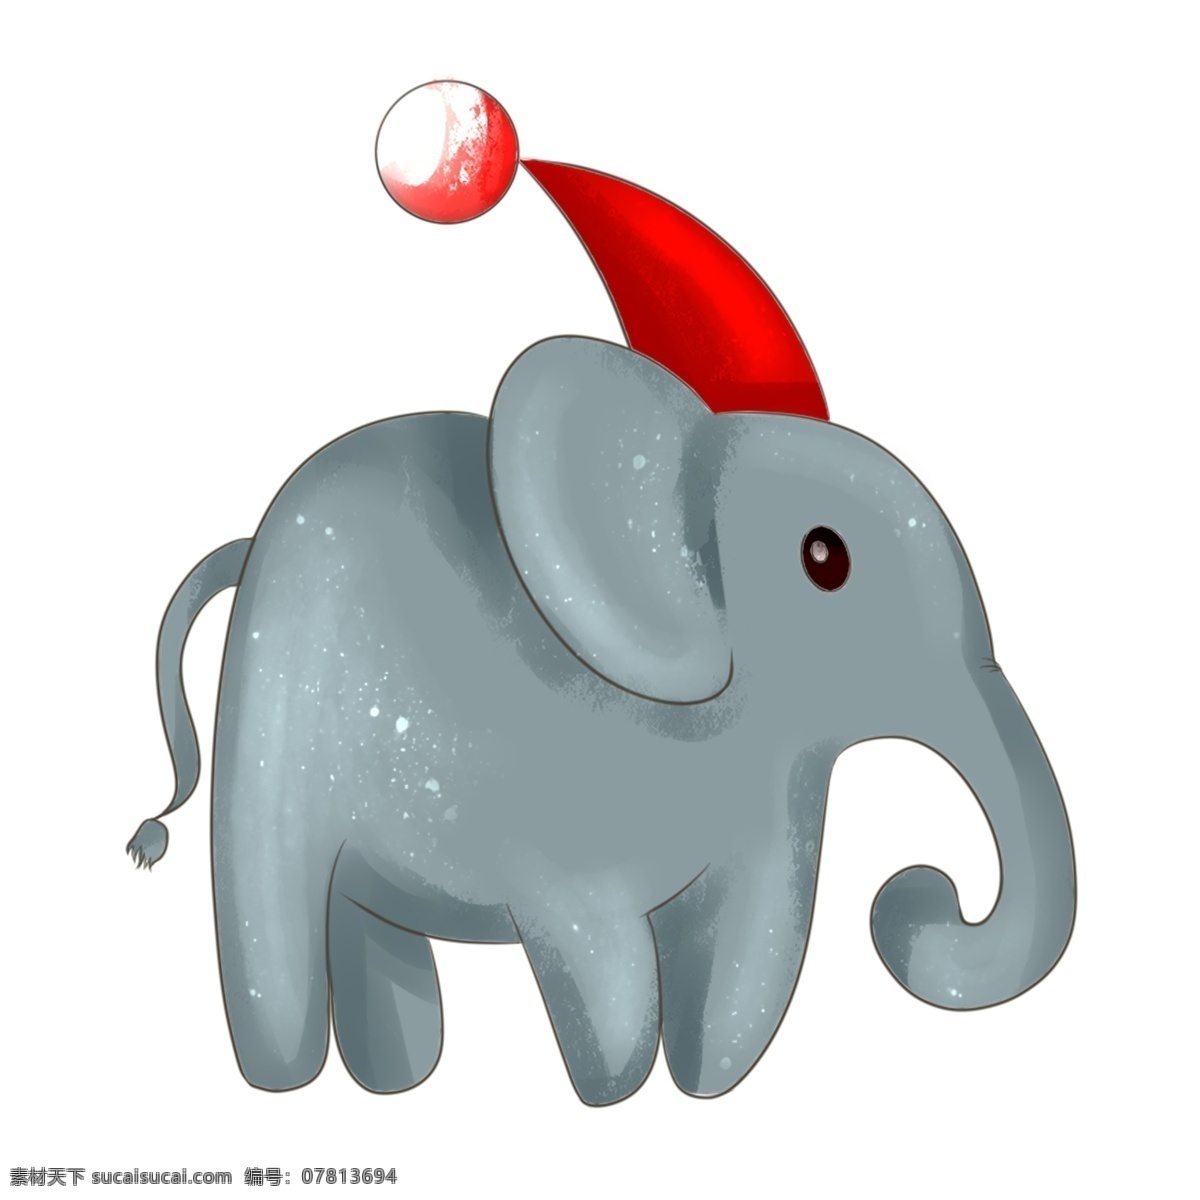 手绘 卡通 圣诞 大象 插画 手绘大象 卡通大象 灰色大象 动物 圣诞节 圣诞大象插画 戴 红色 帽